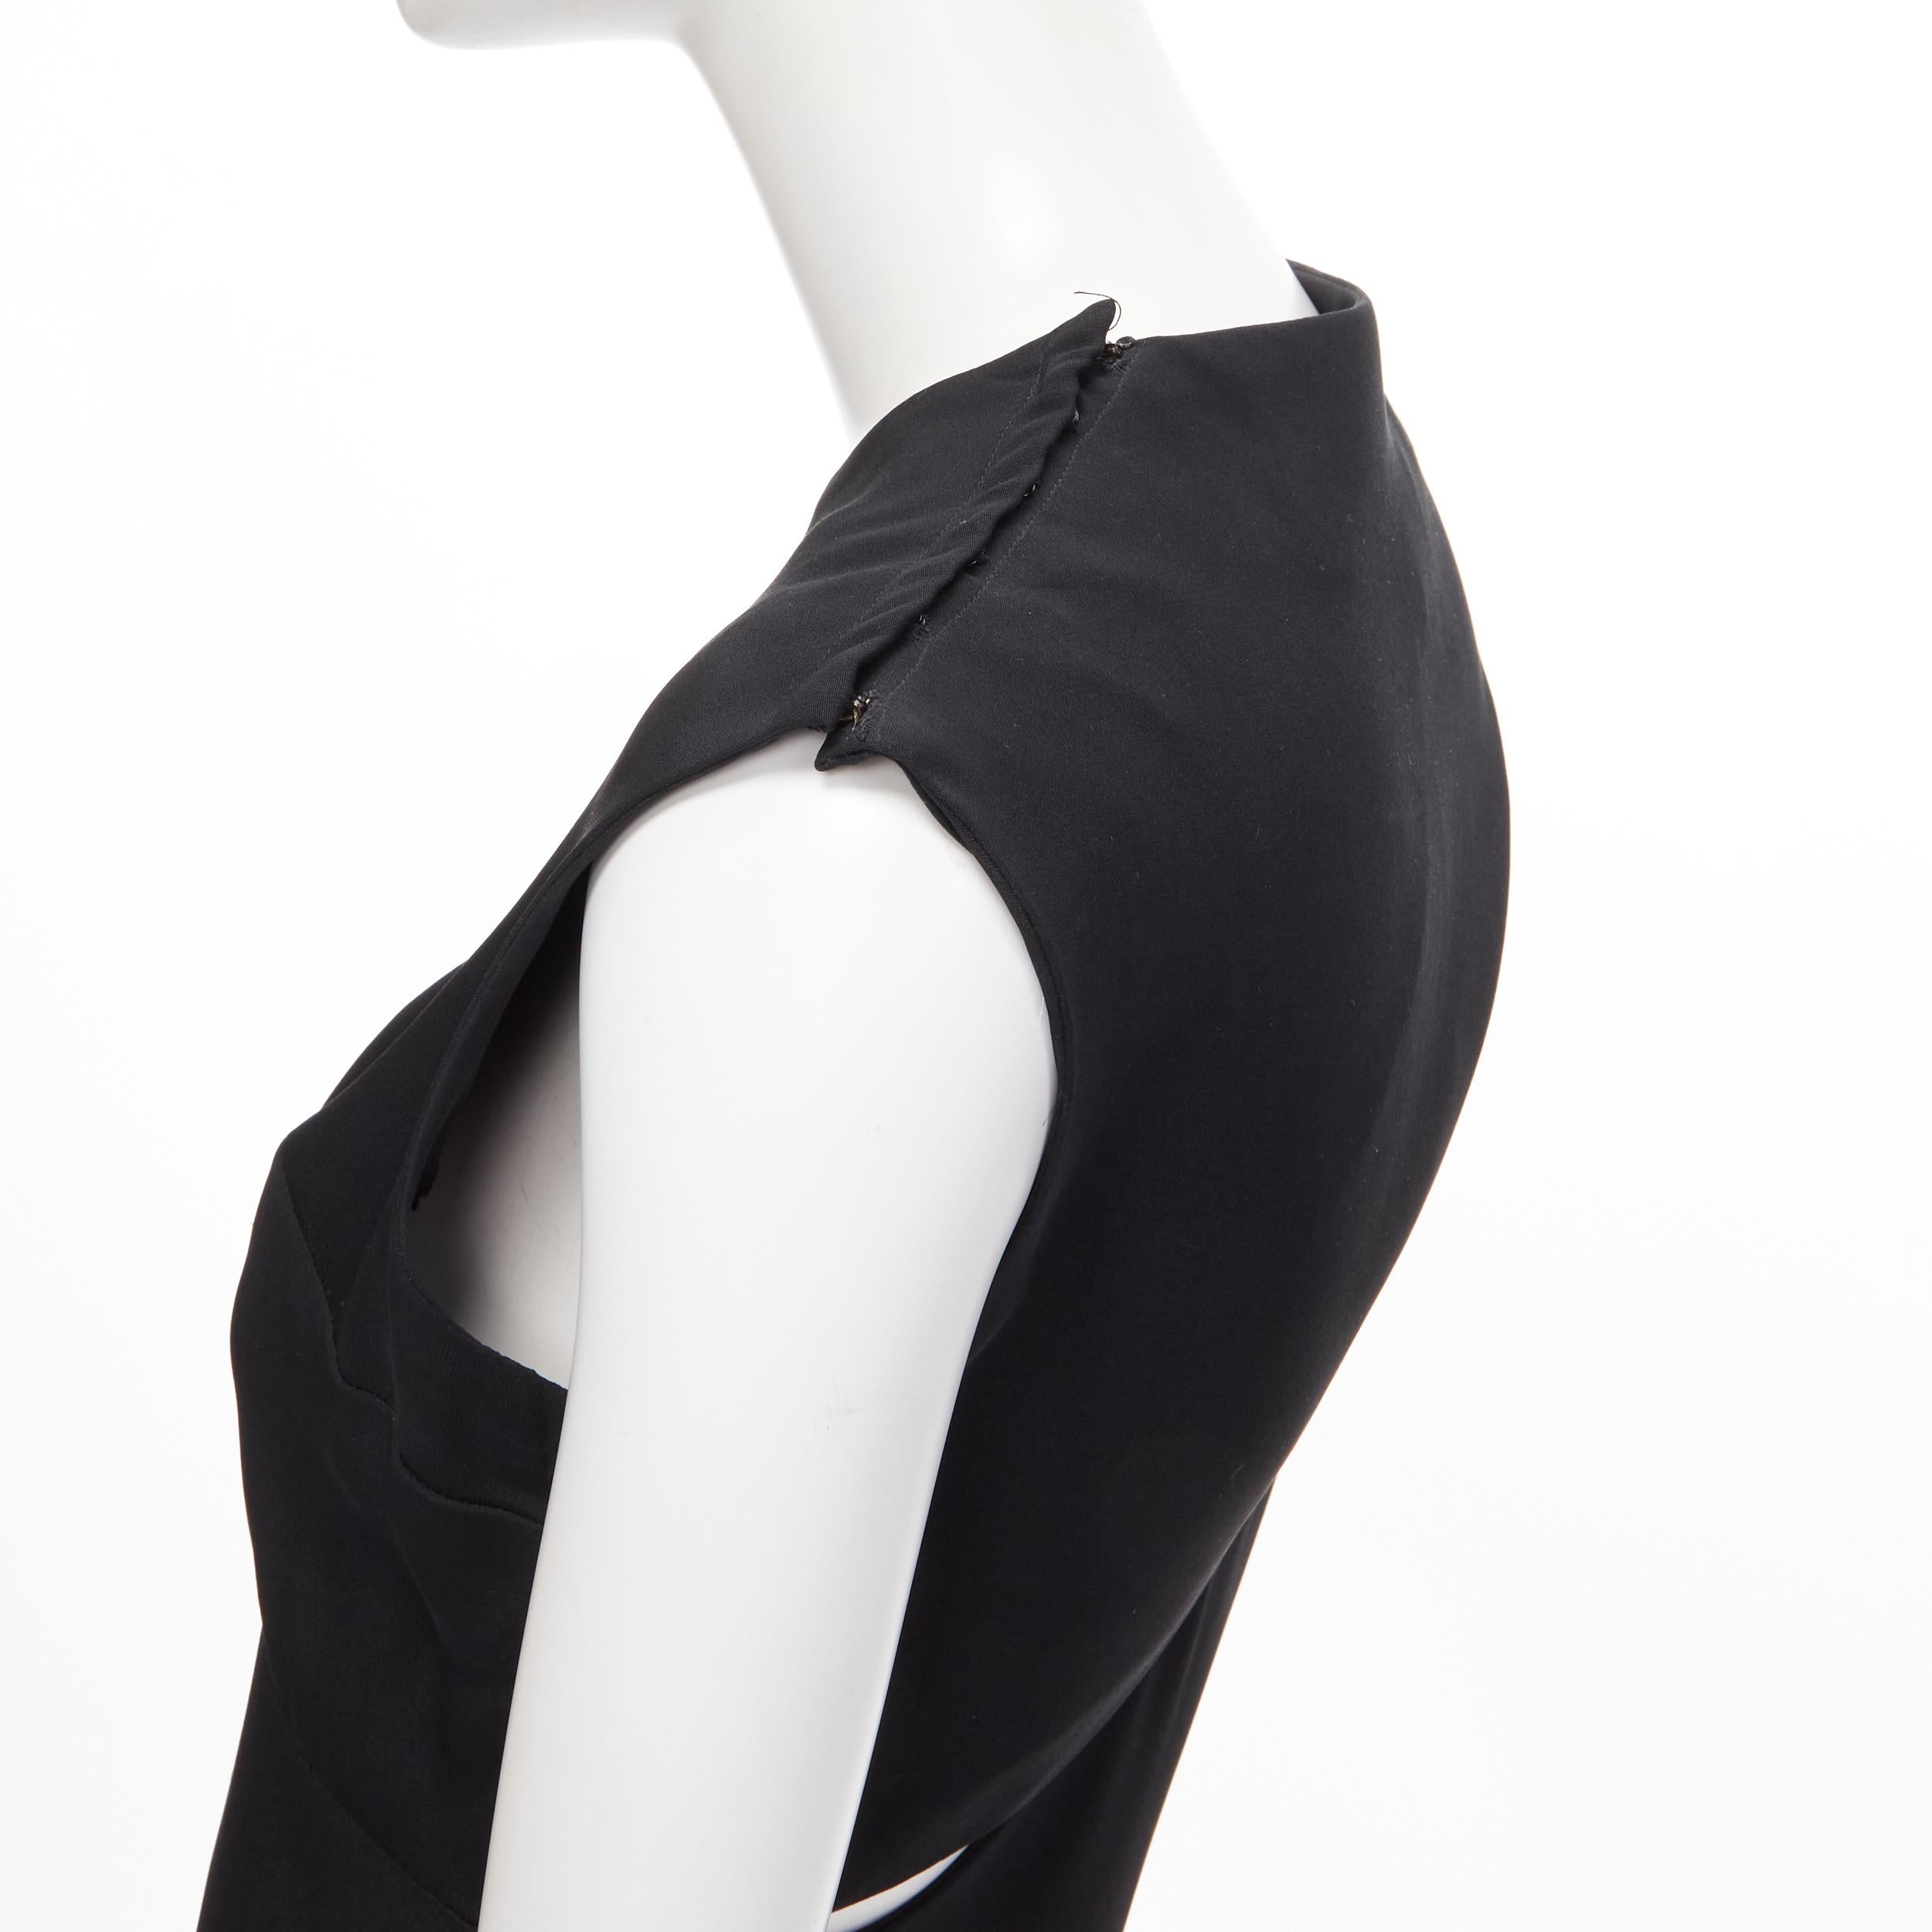 MADAME GRES Haute Couture Paris 1972 black crepe slash slit cut out dress M For Sale 3